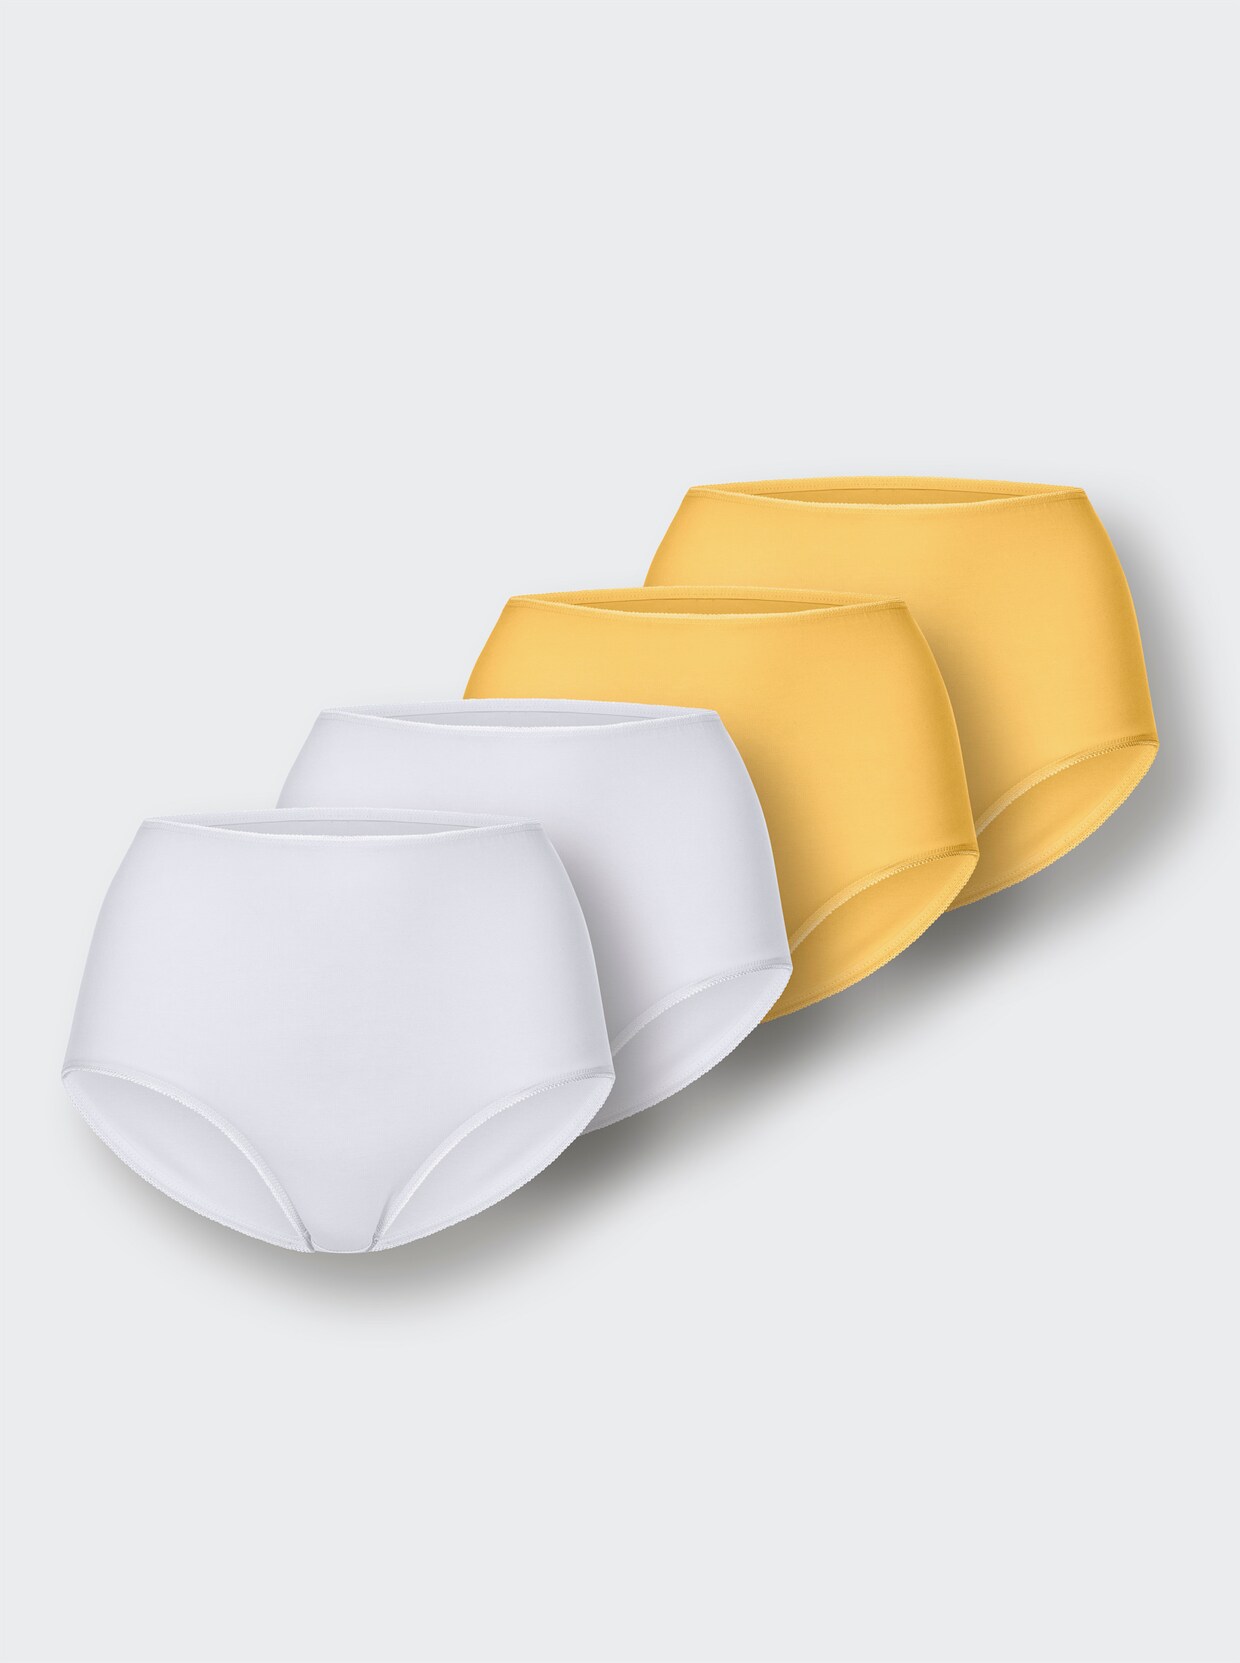 wäschepur Kalhotky s pasem - 2x bílá + 2x žlutá